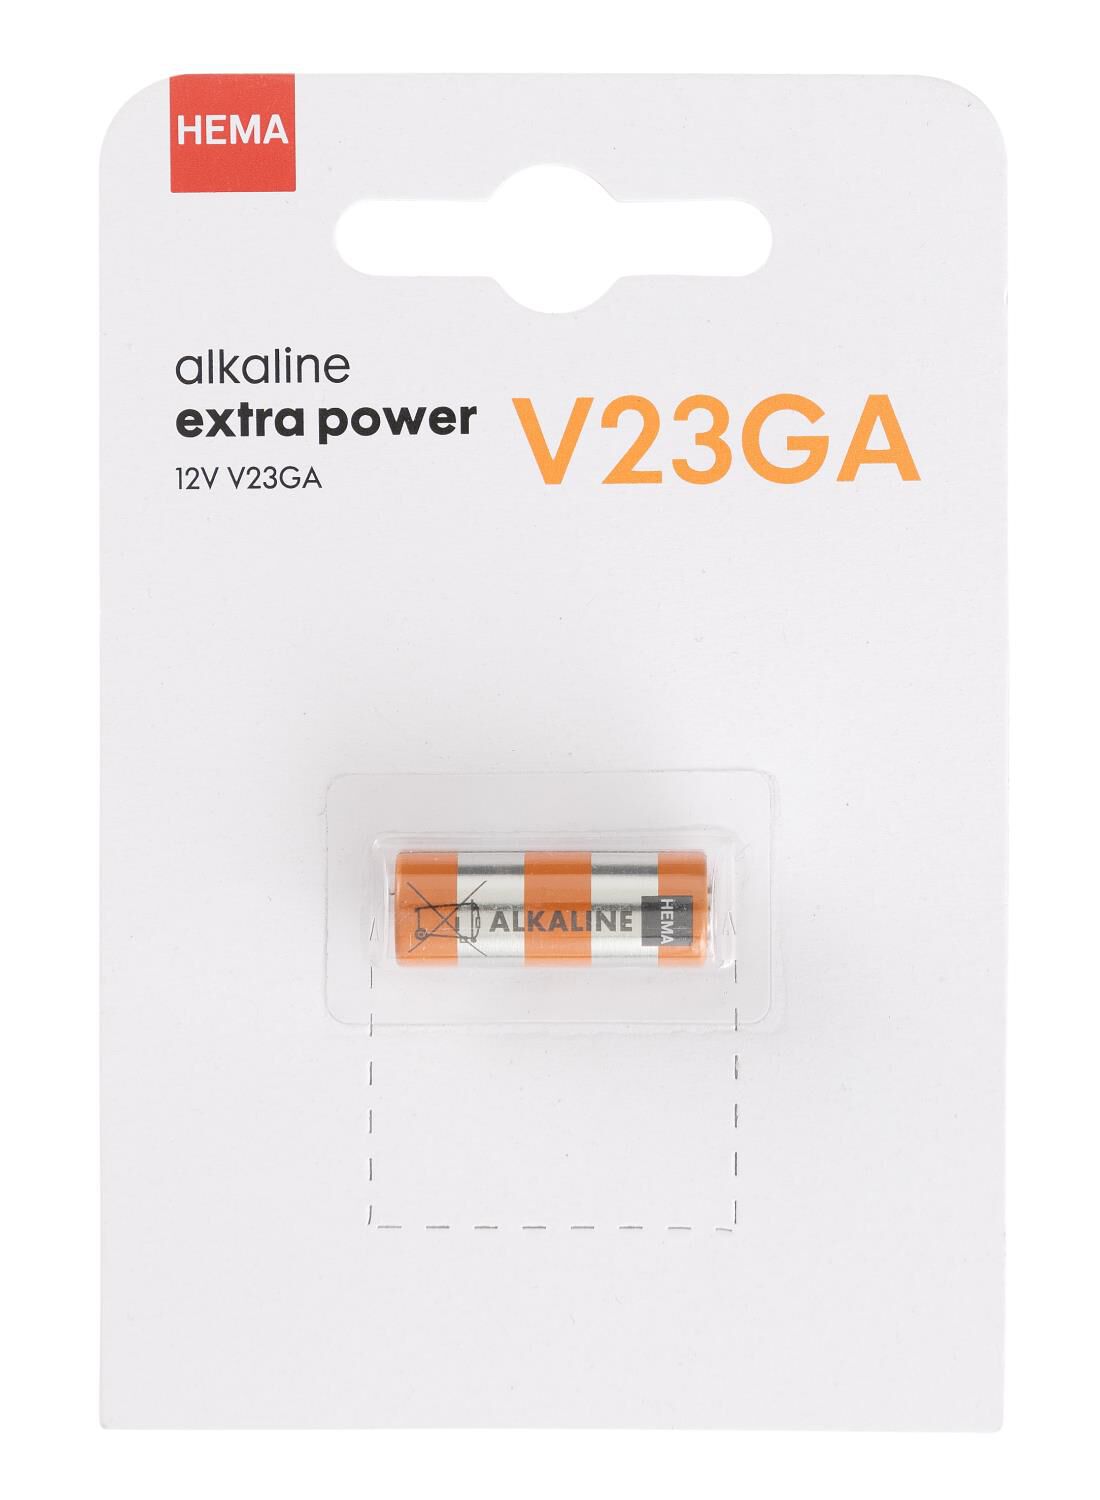 HEMA V23GA Alkaline Extra Power